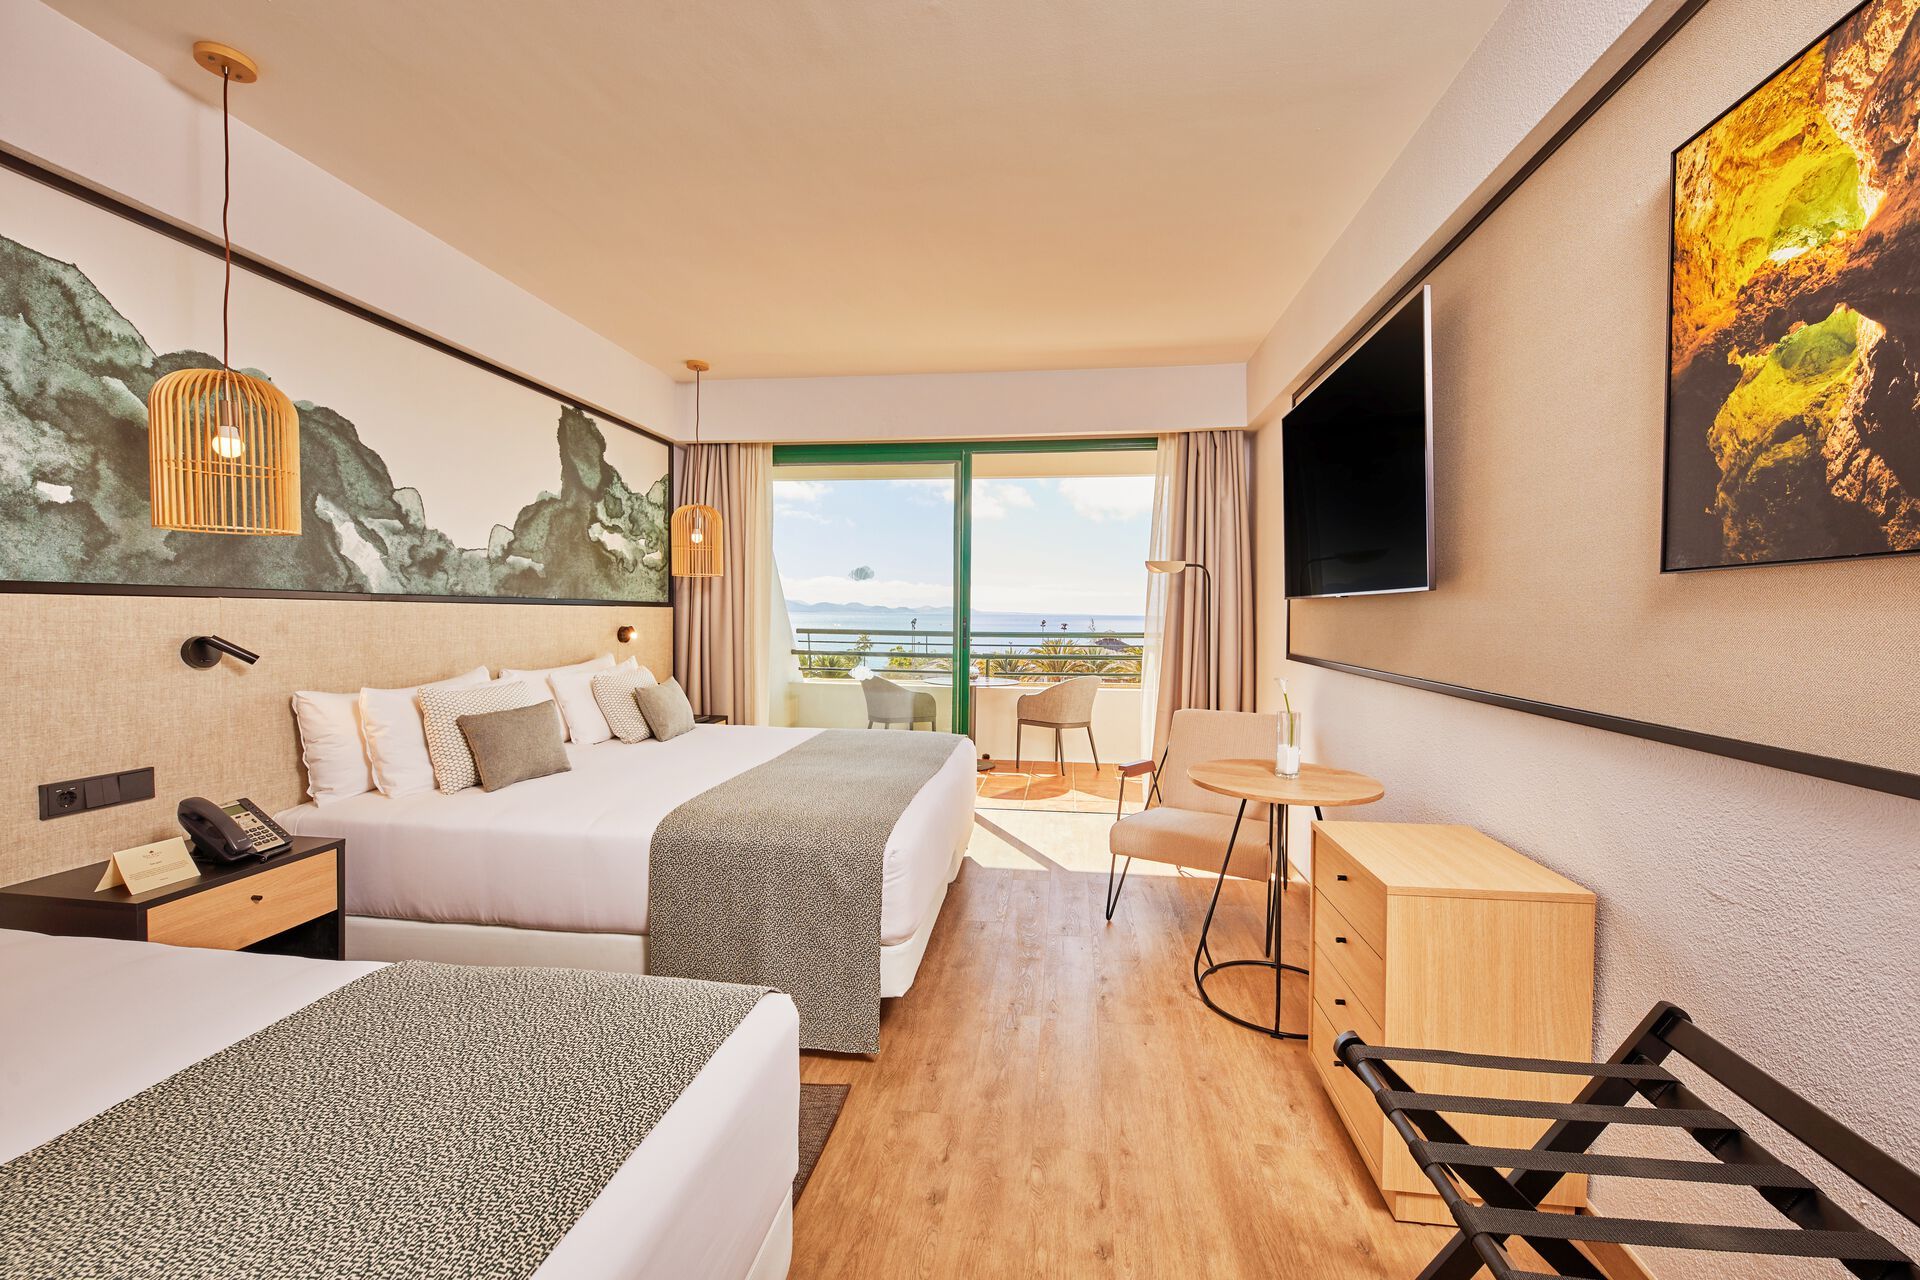 Canaries - Lanzarote - Espagne - Hotel Dreams Lanzarote Playa Dorada Resort & Spa 5*